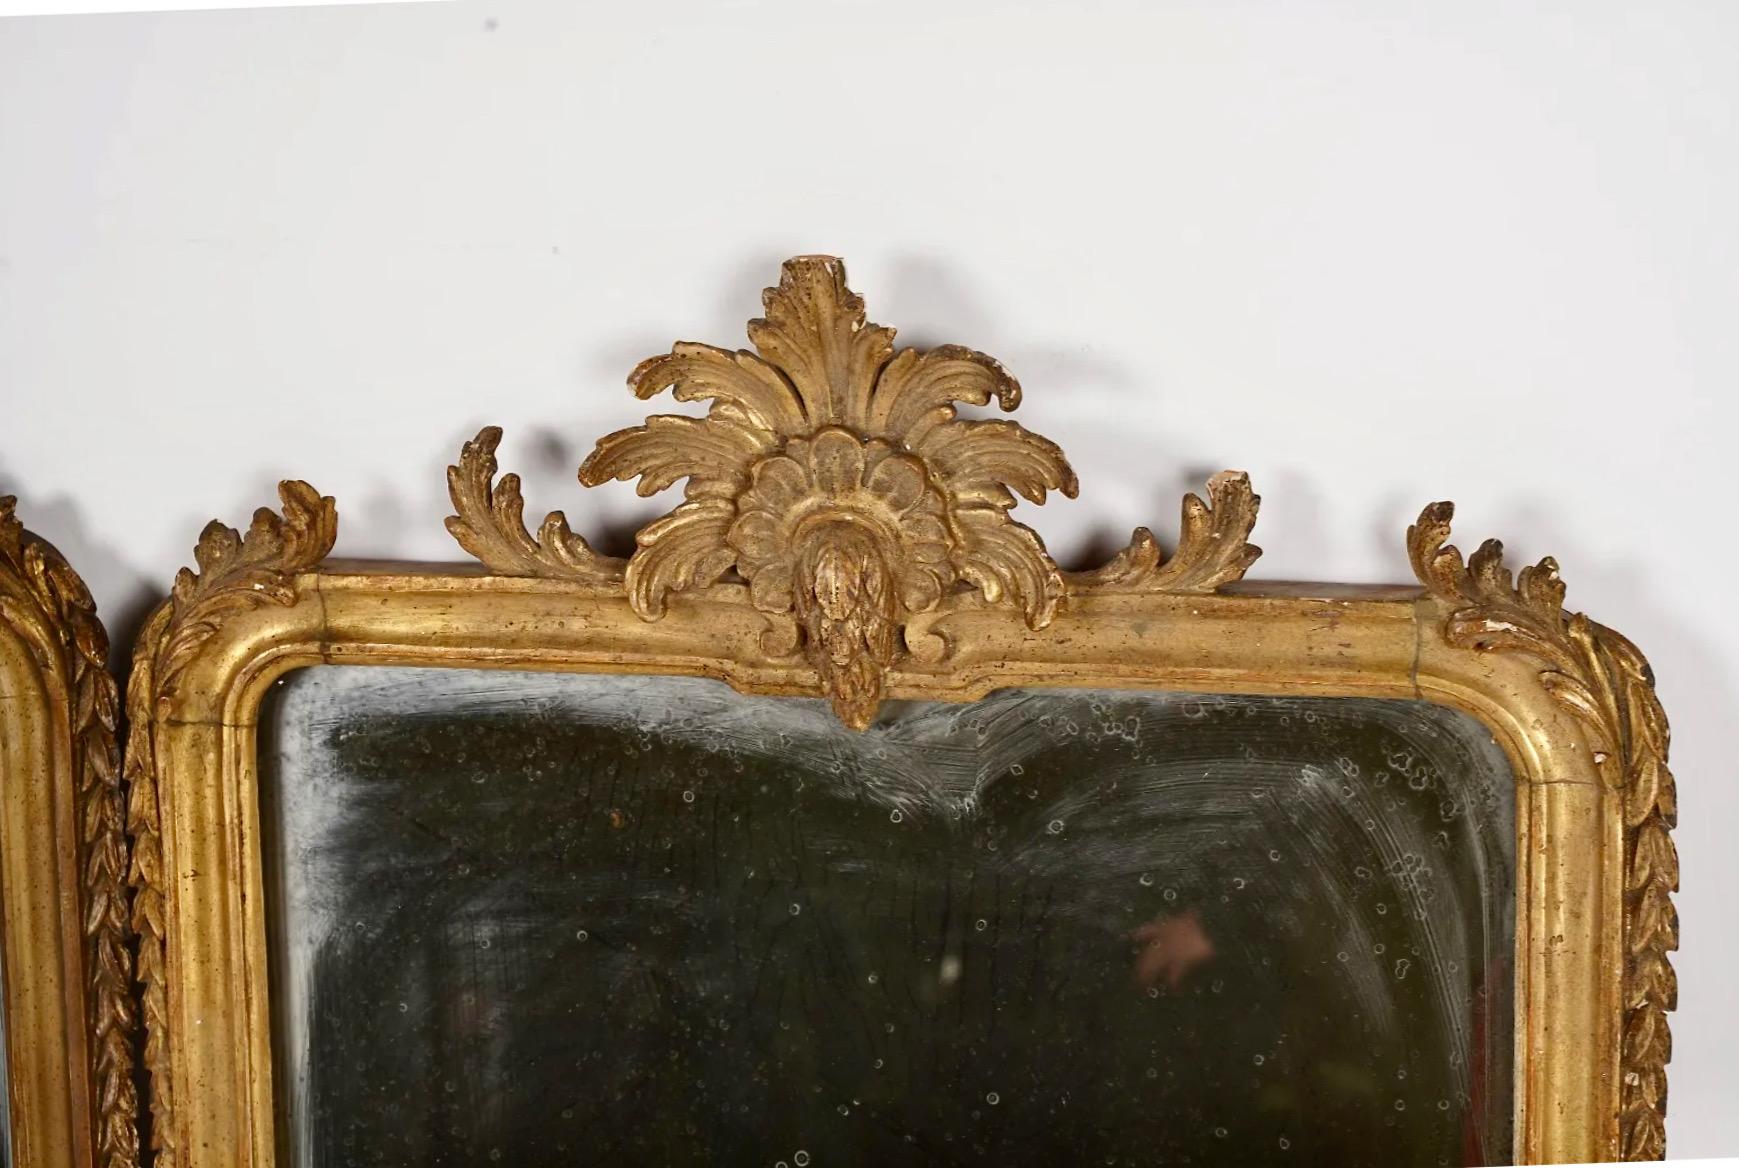 Dies ist ein sehr ungewöhnliches Paar italienischer Barock-Girandolen aus dem späten 17. oder frühen 18. Jahrhundert. Die Girandolen haben einen fein geschnitzten und vergoldeten Holzrahmen, der von einer fein geschnitzten und vergoldeten